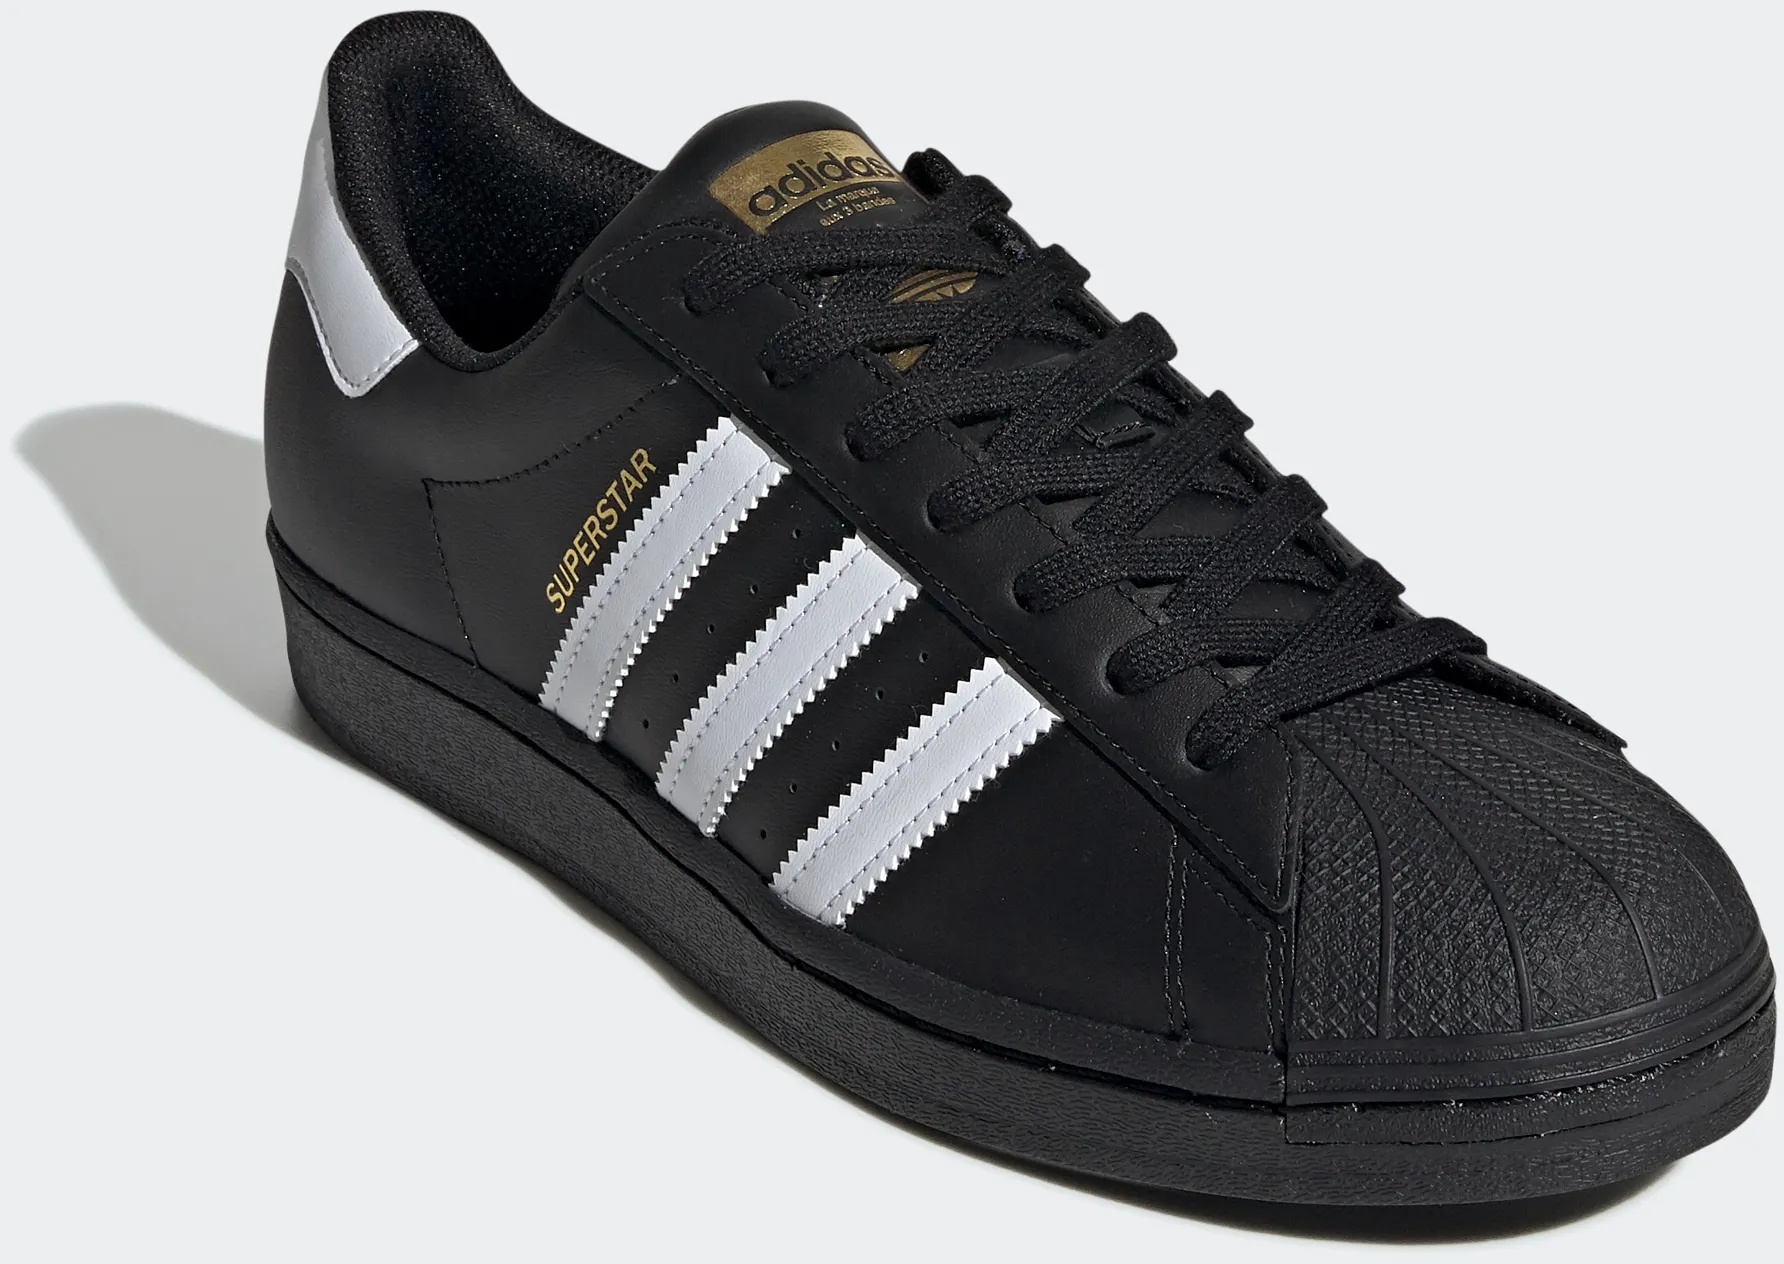 Sneaker ADIDAS ORIGINALS "SUPERSTAR" Gr. 42,5, schwarz-weiß (core black, cloud white, core black) Schuhe Schnürhalbschuhe Bestseller